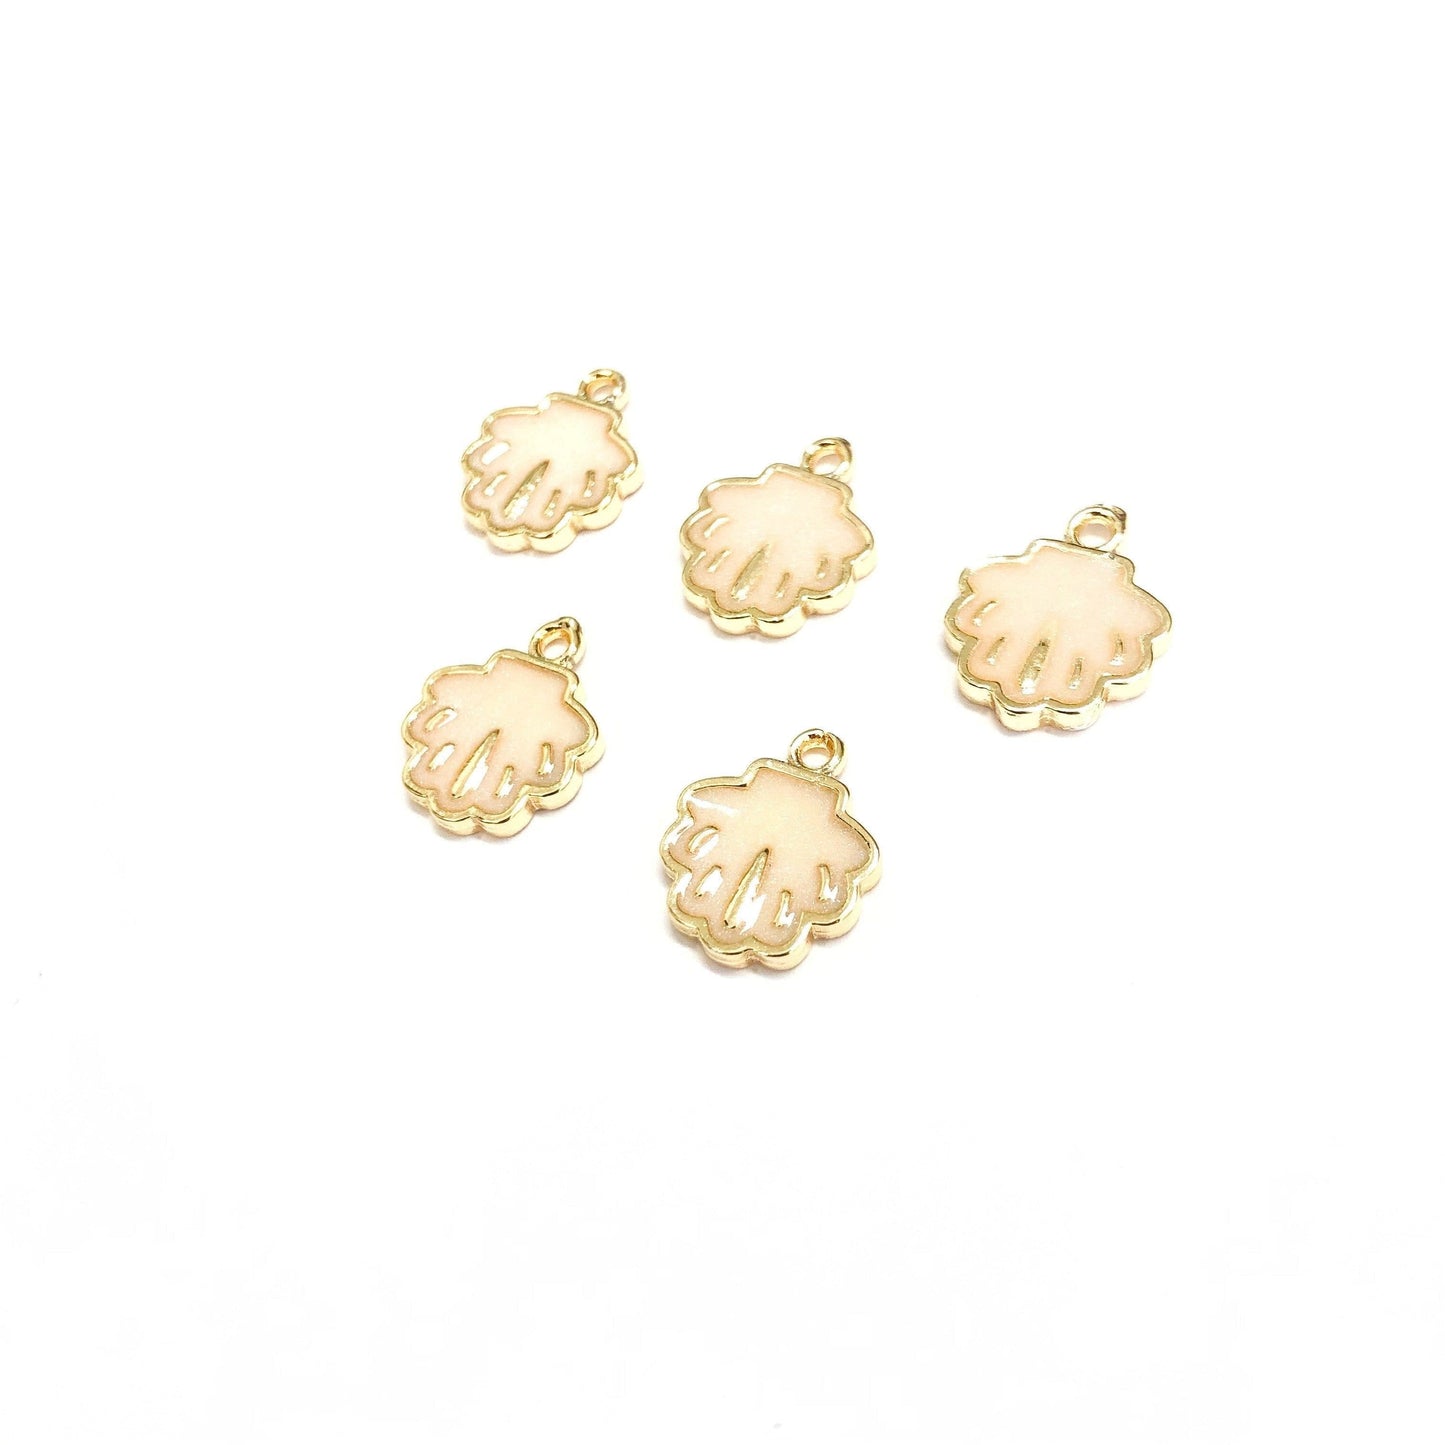 Vergoldeter Austern-Schaukelaufsatz aus Emaille – Perlmutt